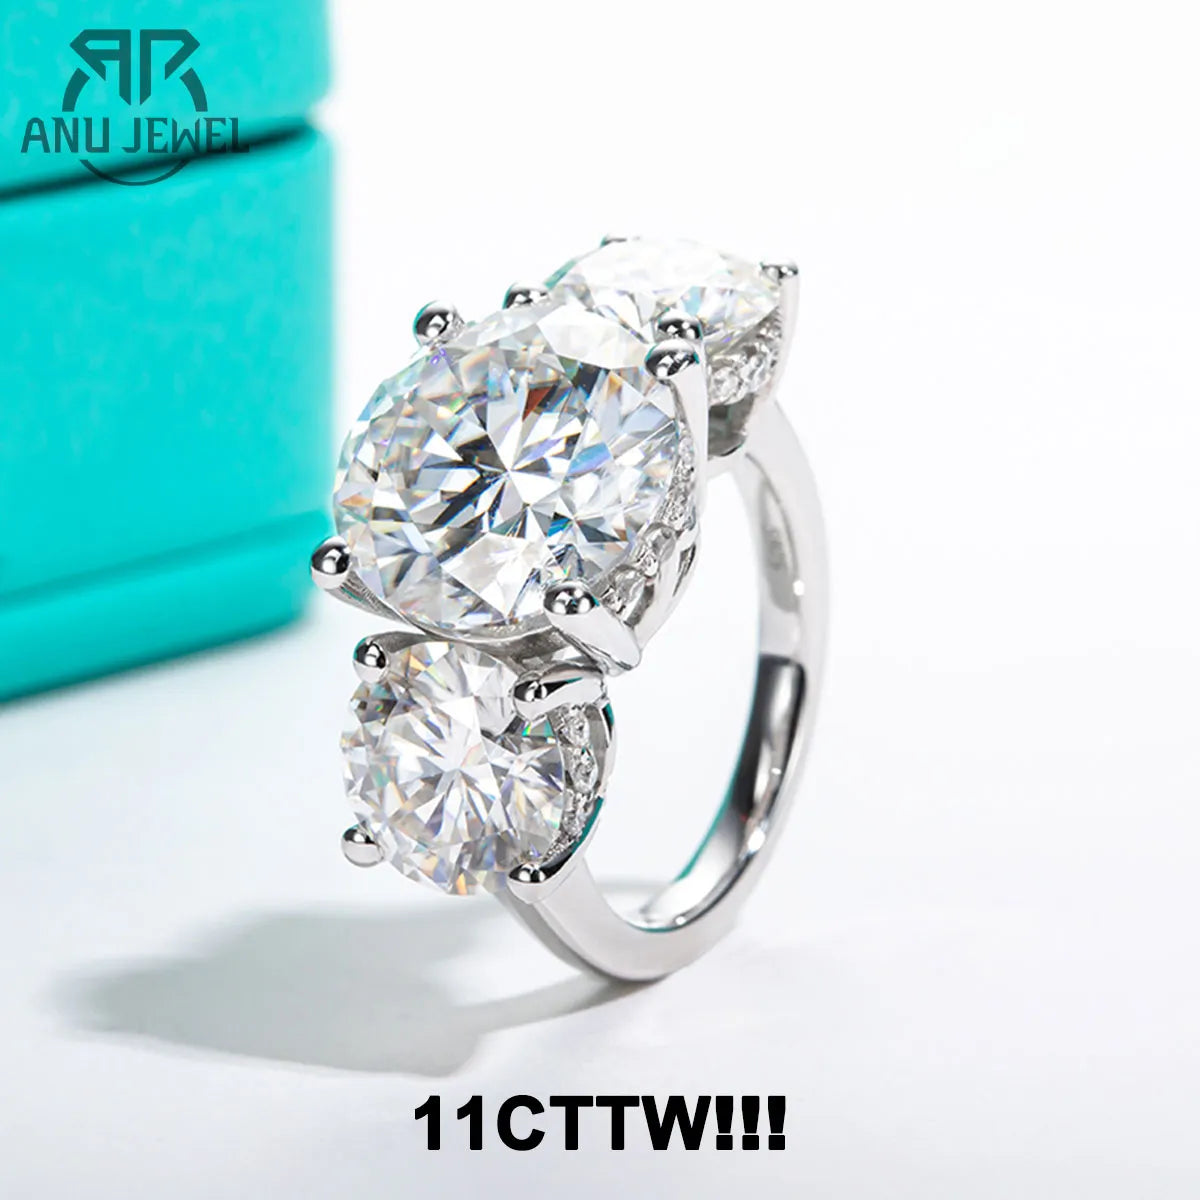 Moissanite engagement rings, diamond alternative.